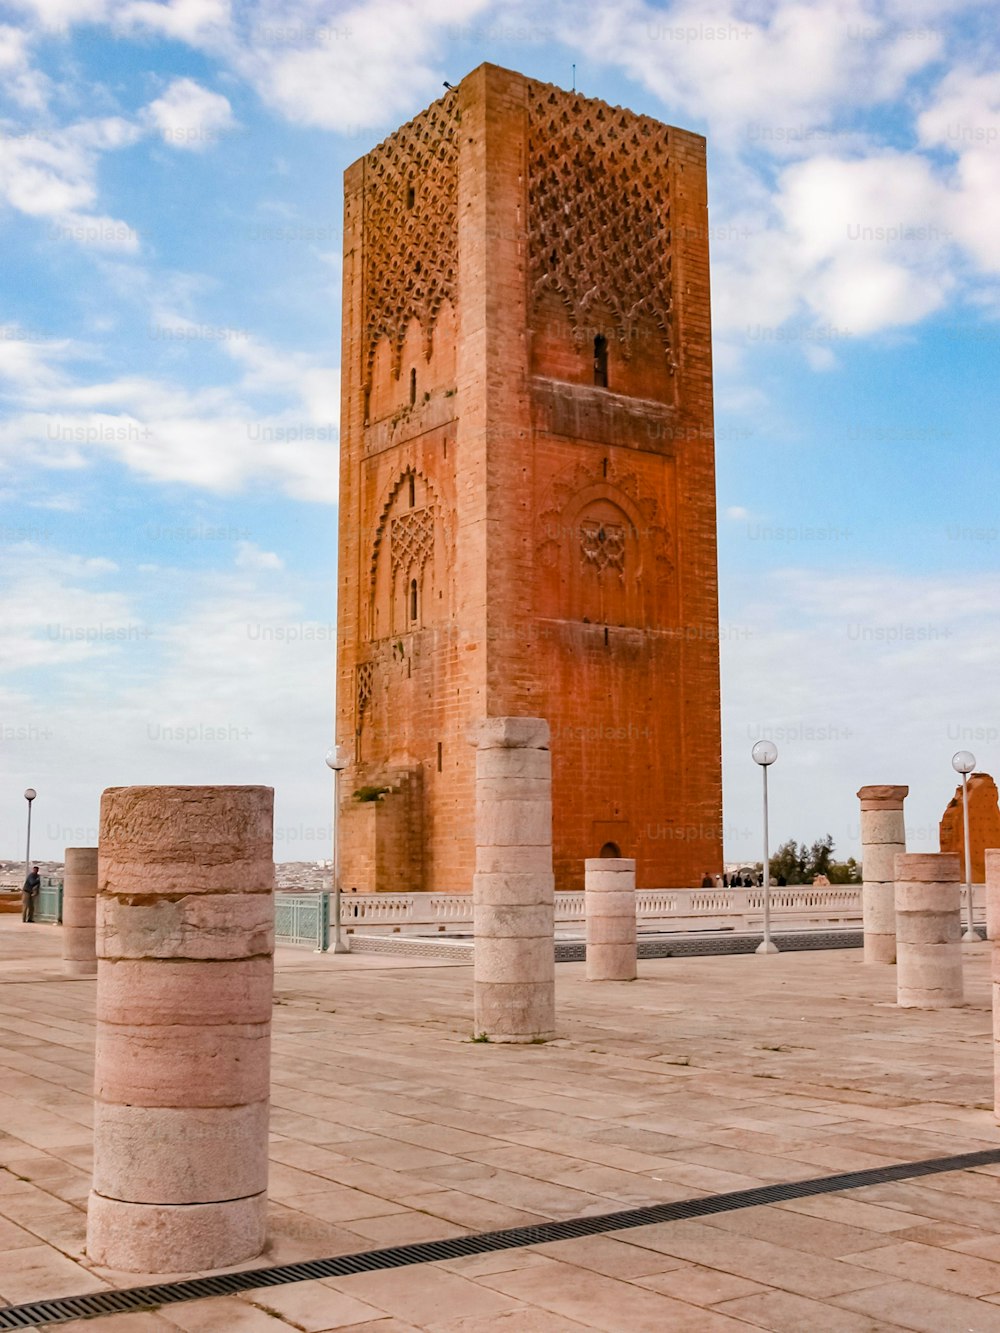 Una toma vertical del hito histórico de la torre Tour Hassan en Rabat, Marruecos